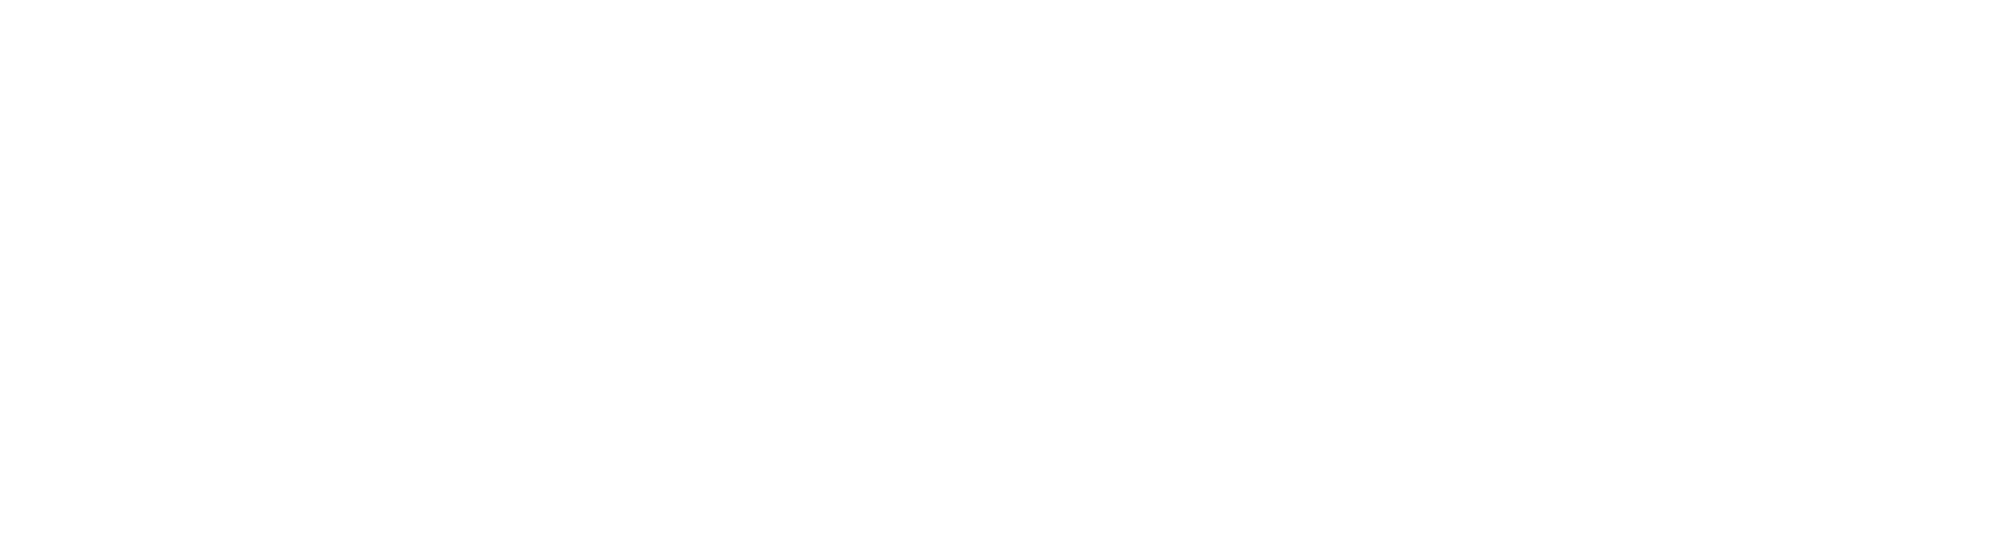 Syracruse University Newhouse School of Public Communications logo